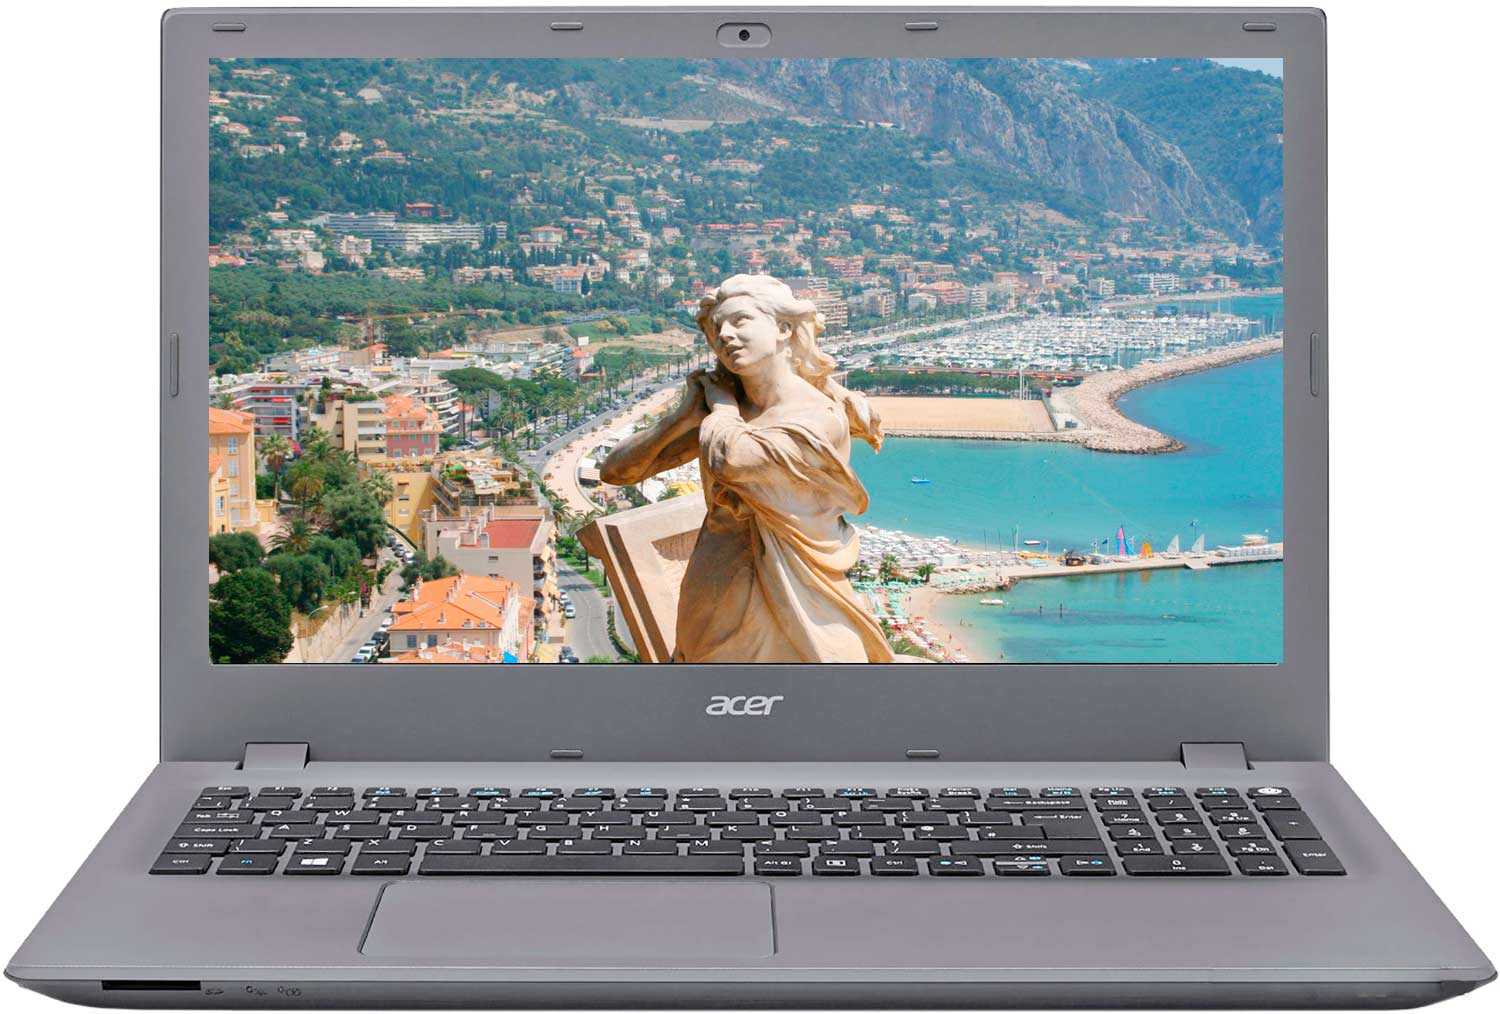 Ноутбук acer aspire e5 573g-35vr — купить, цена и характеристики, отзывы